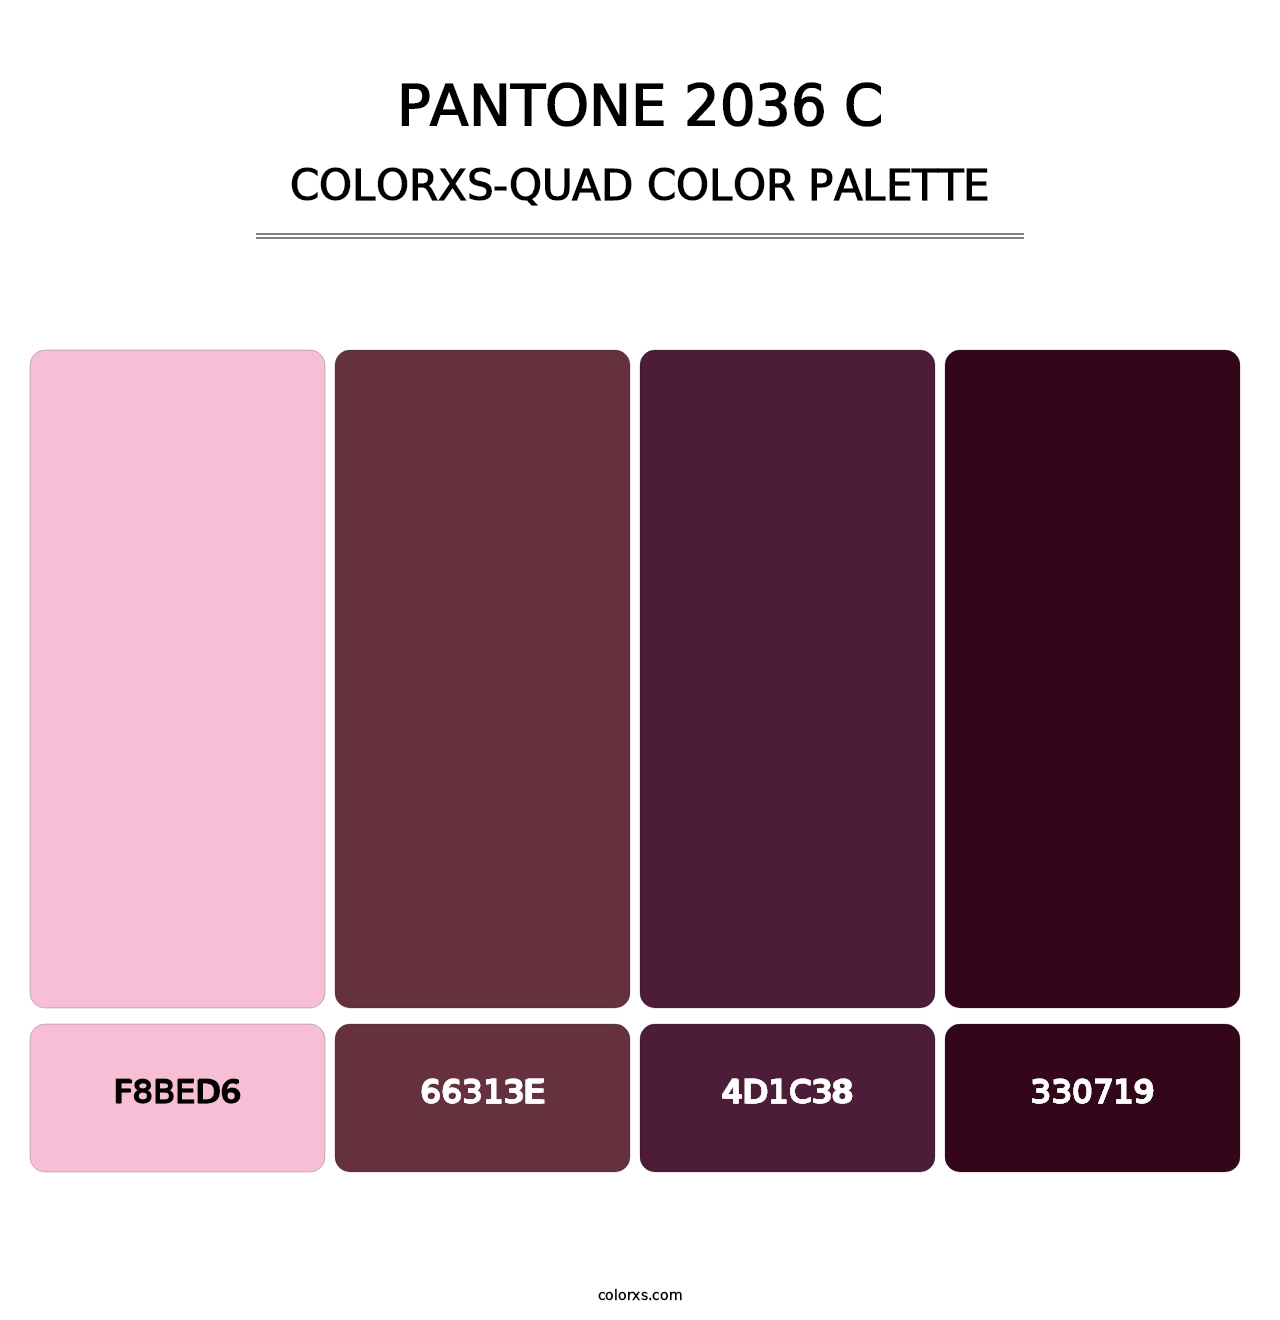 PANTONE 2036 C - Colorxs Quad Palette